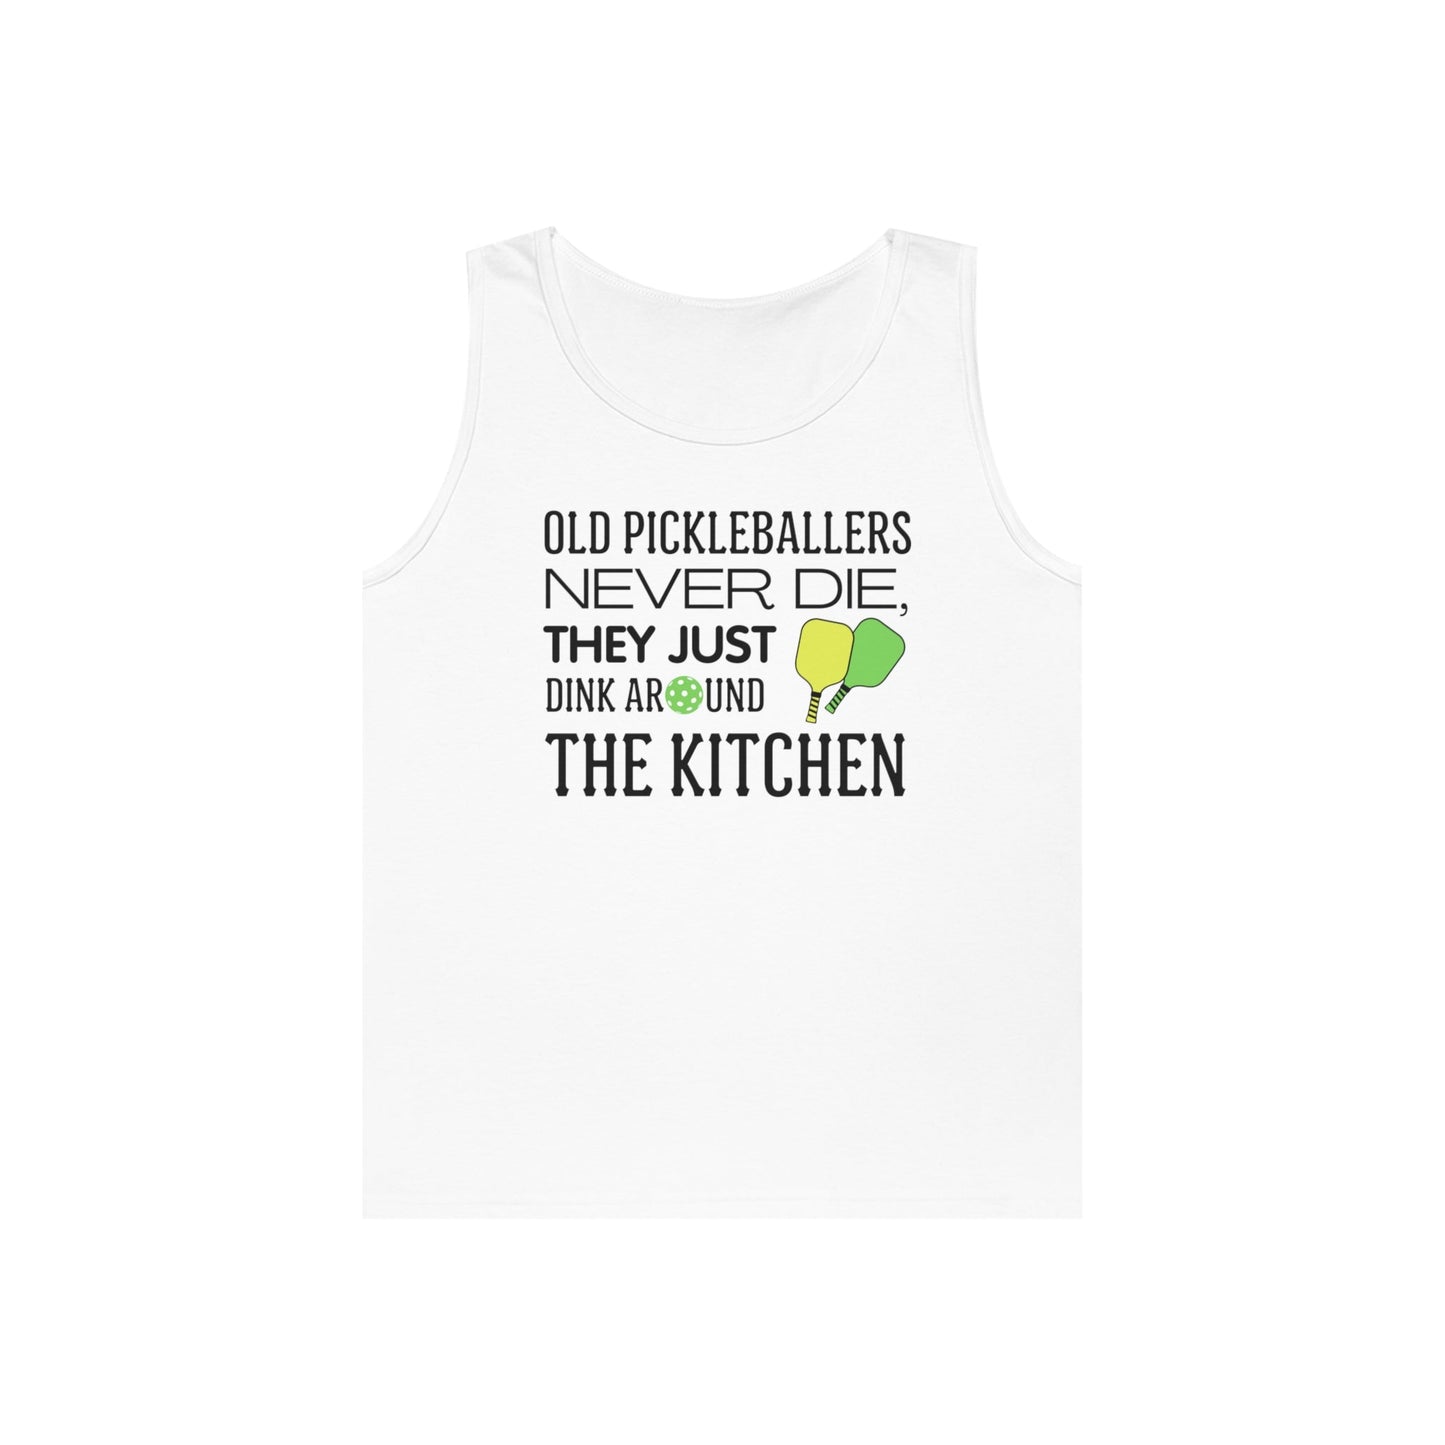 Pickleballers Never Die